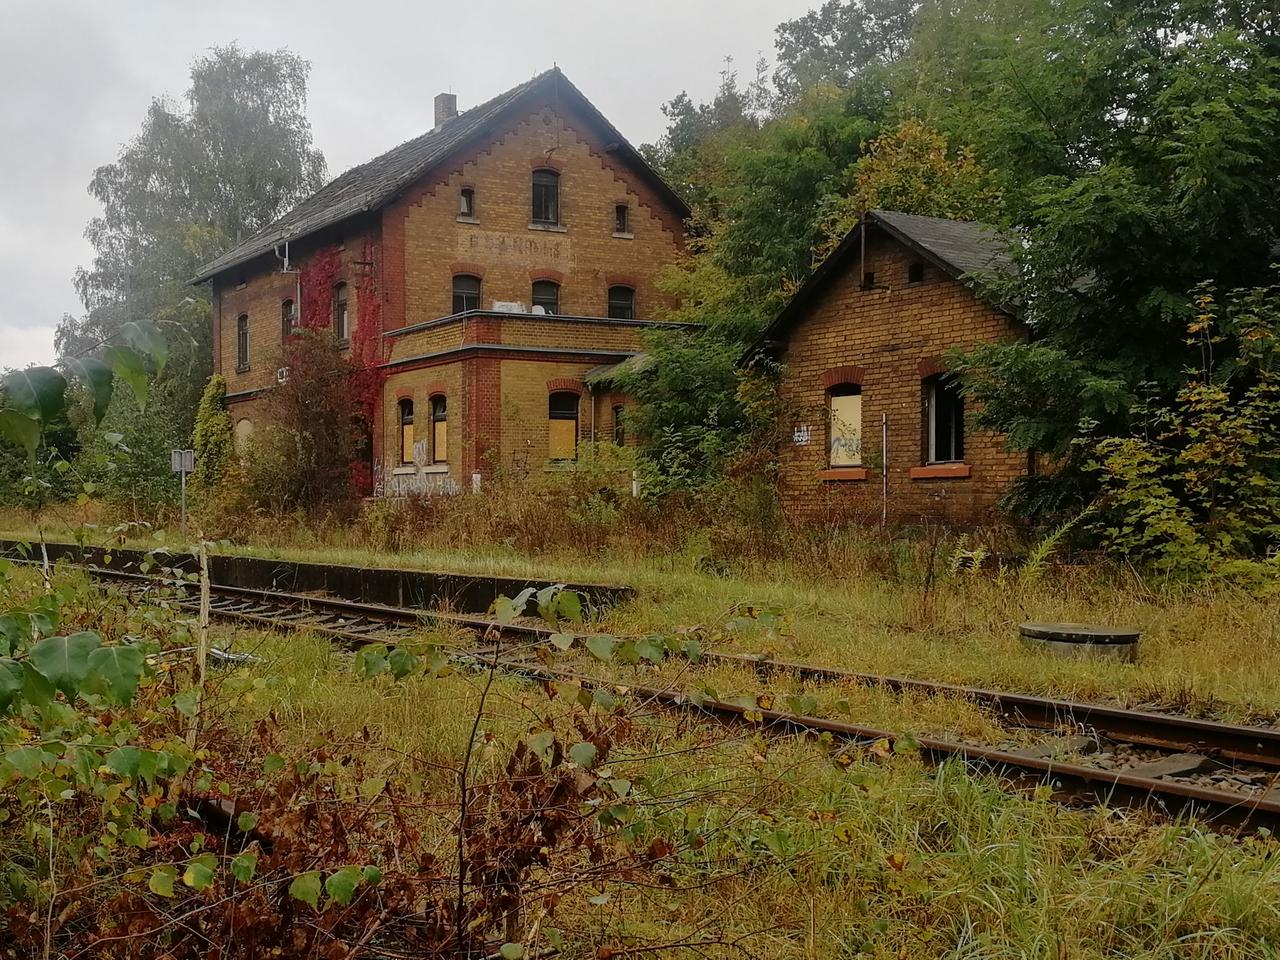 Ein altes Bahnhofsgebäude aus gelben Ziegelsteinen. Die Fenster sind kaputt oder zugemauert. Auf den Gleisen davor wachsen Gräser.